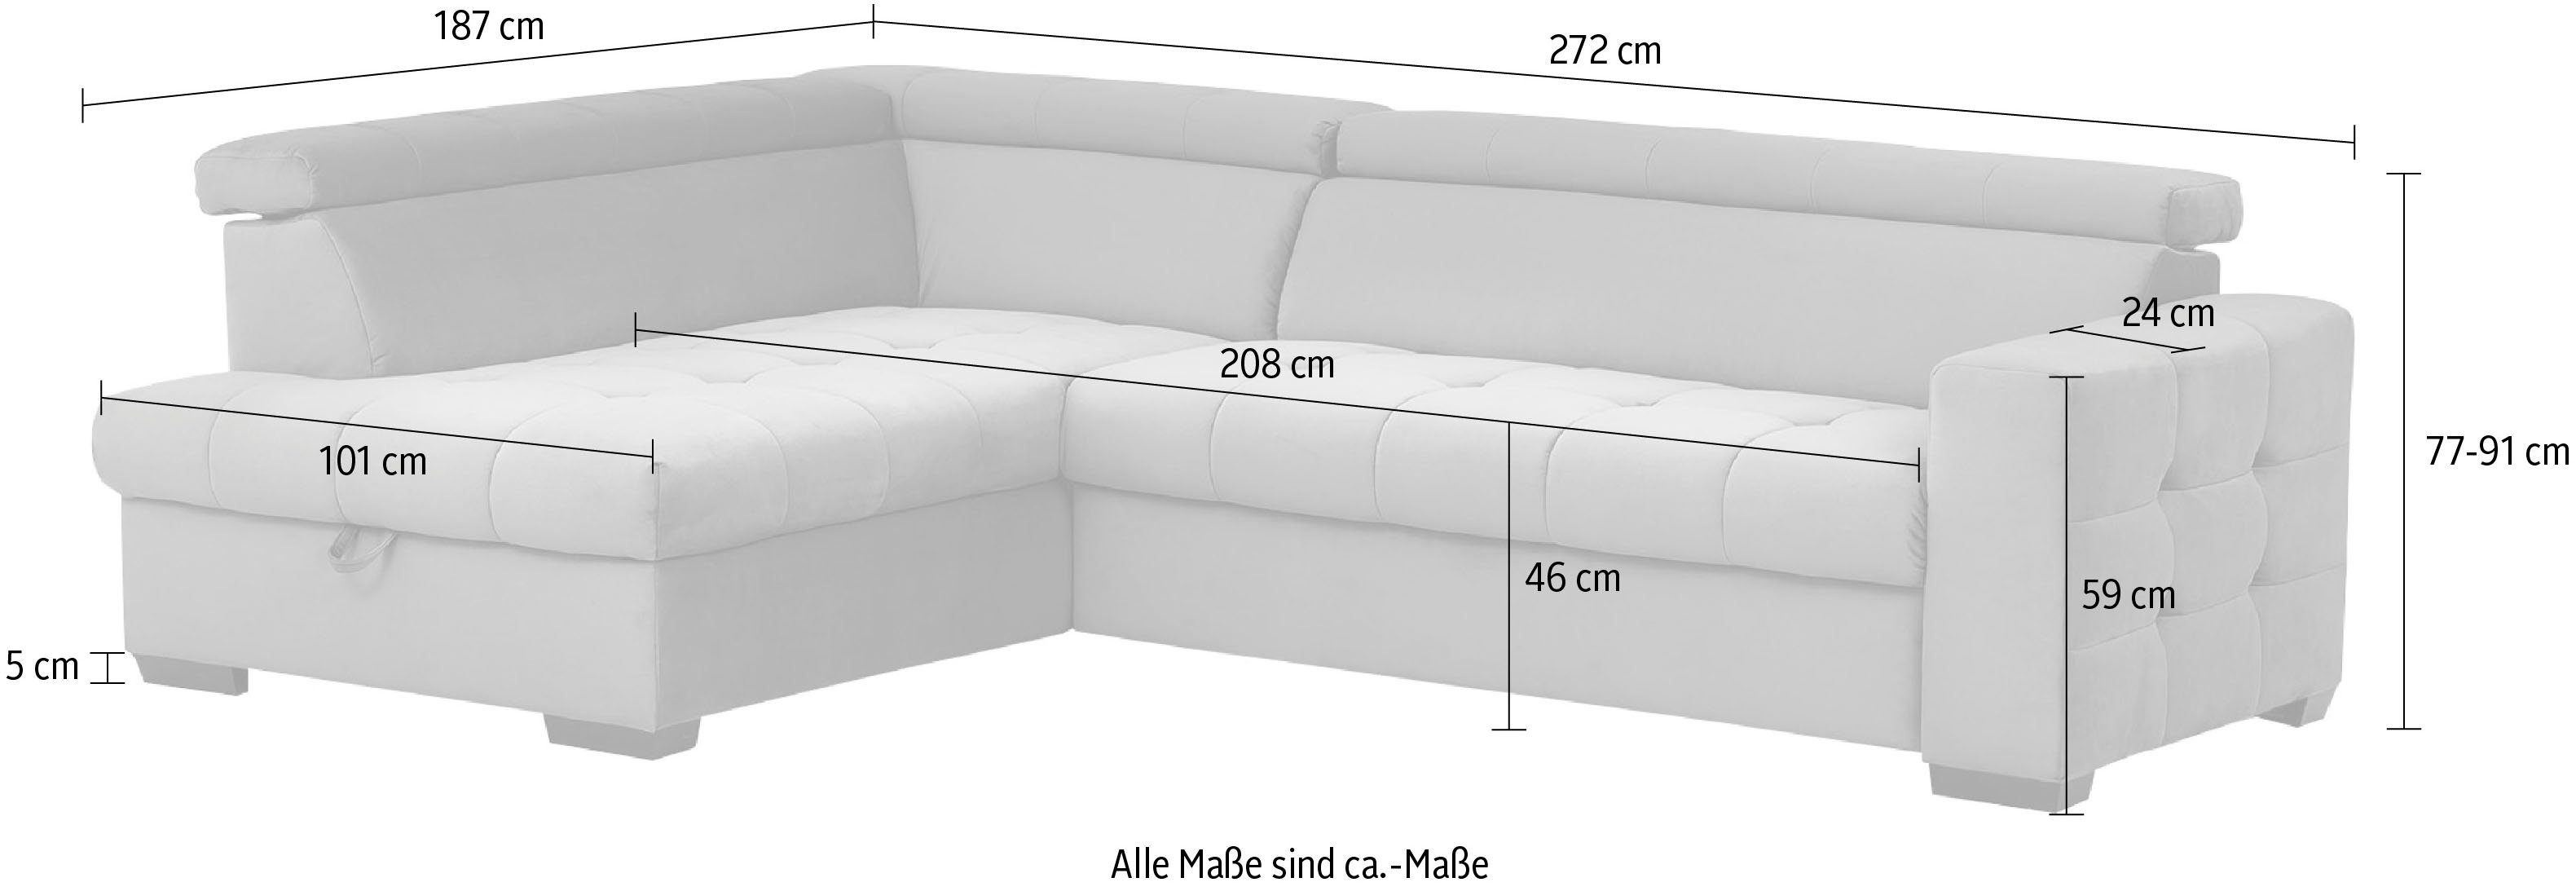 Steppung Sitzbereich, Bettkasten sofa - und fashion Bettfunktion exxpo Wahlweise Ecksofa im mit Otusso,